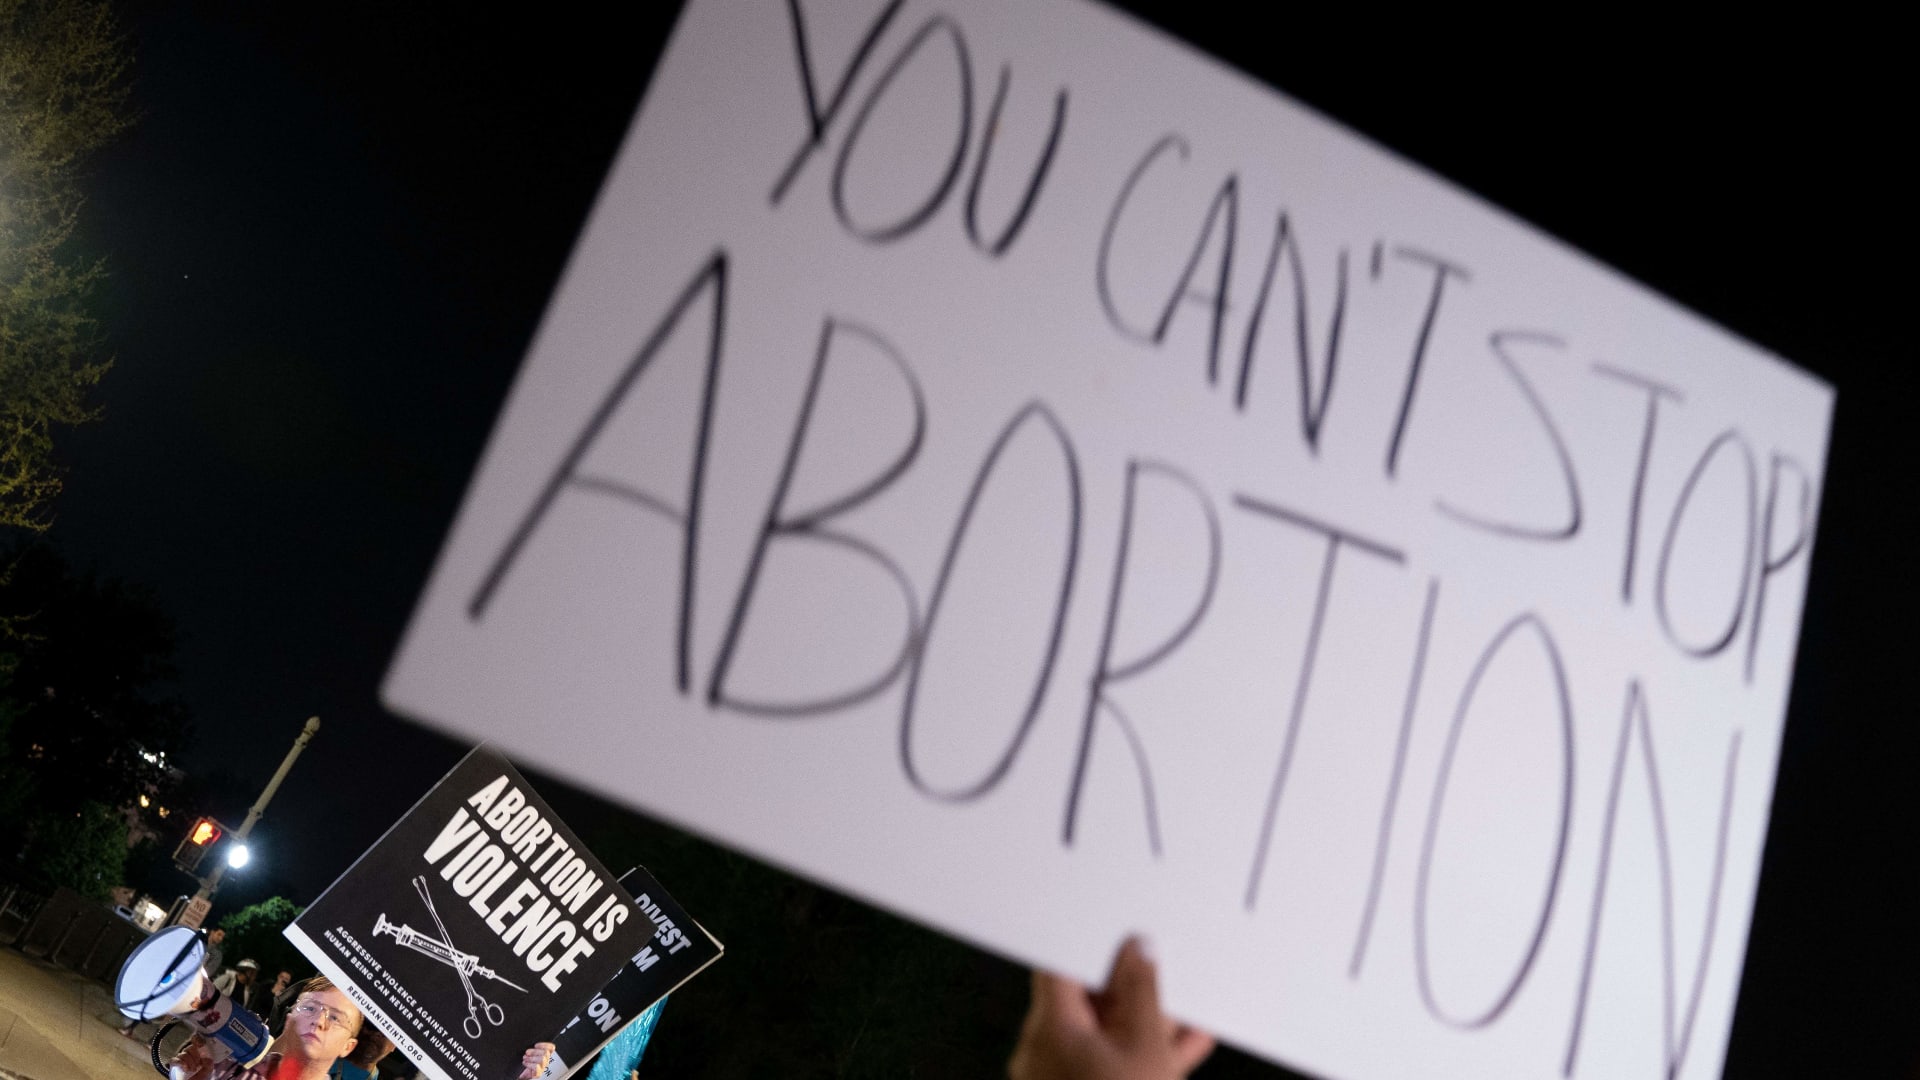 قانون الإجهاض يفجر قنبلة اجتماعية في أمريكا وتظاهرات أمام المحكمة العُليا